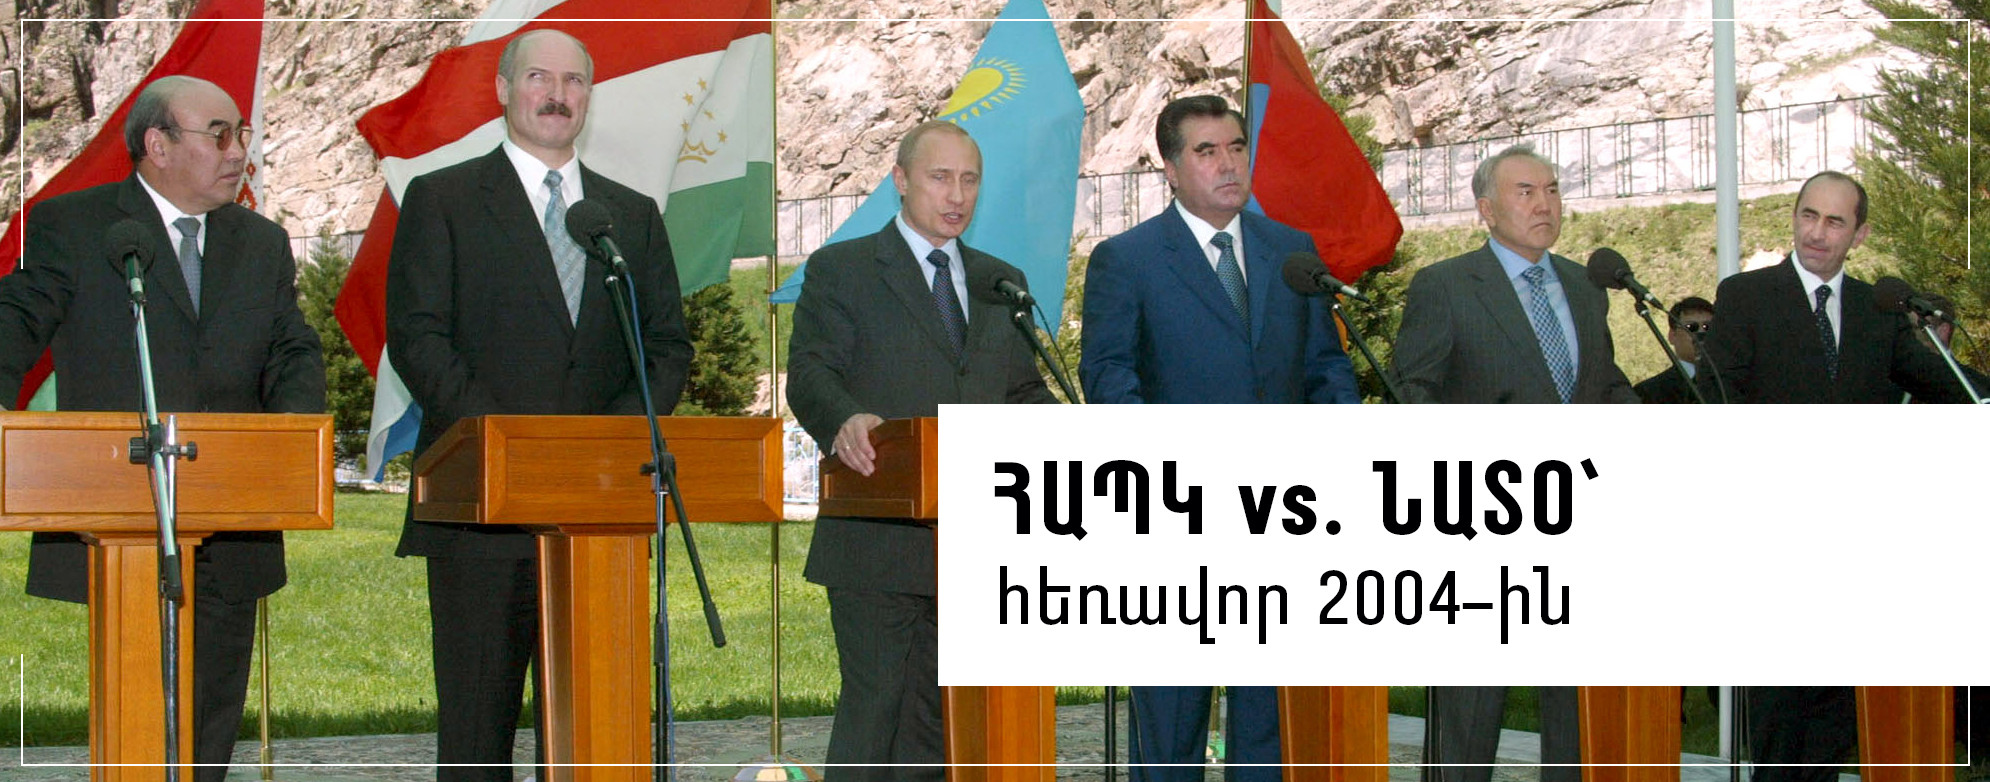 ՀԱՊԿ vs. ՆԱՏՕ՝ հեռավոր 2004-ին